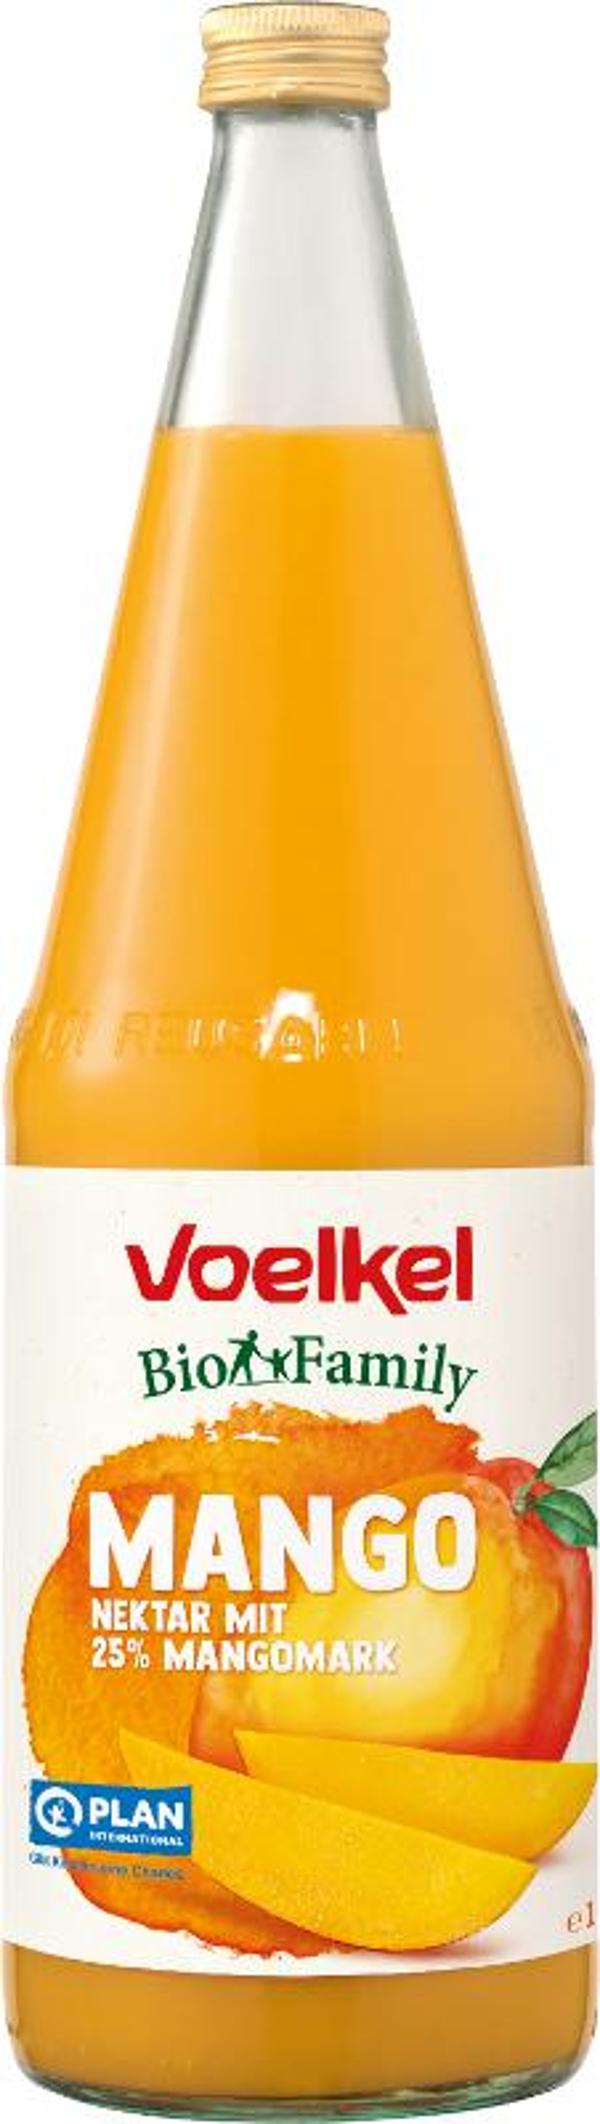 Produktfoto zu Voelkel family Mango